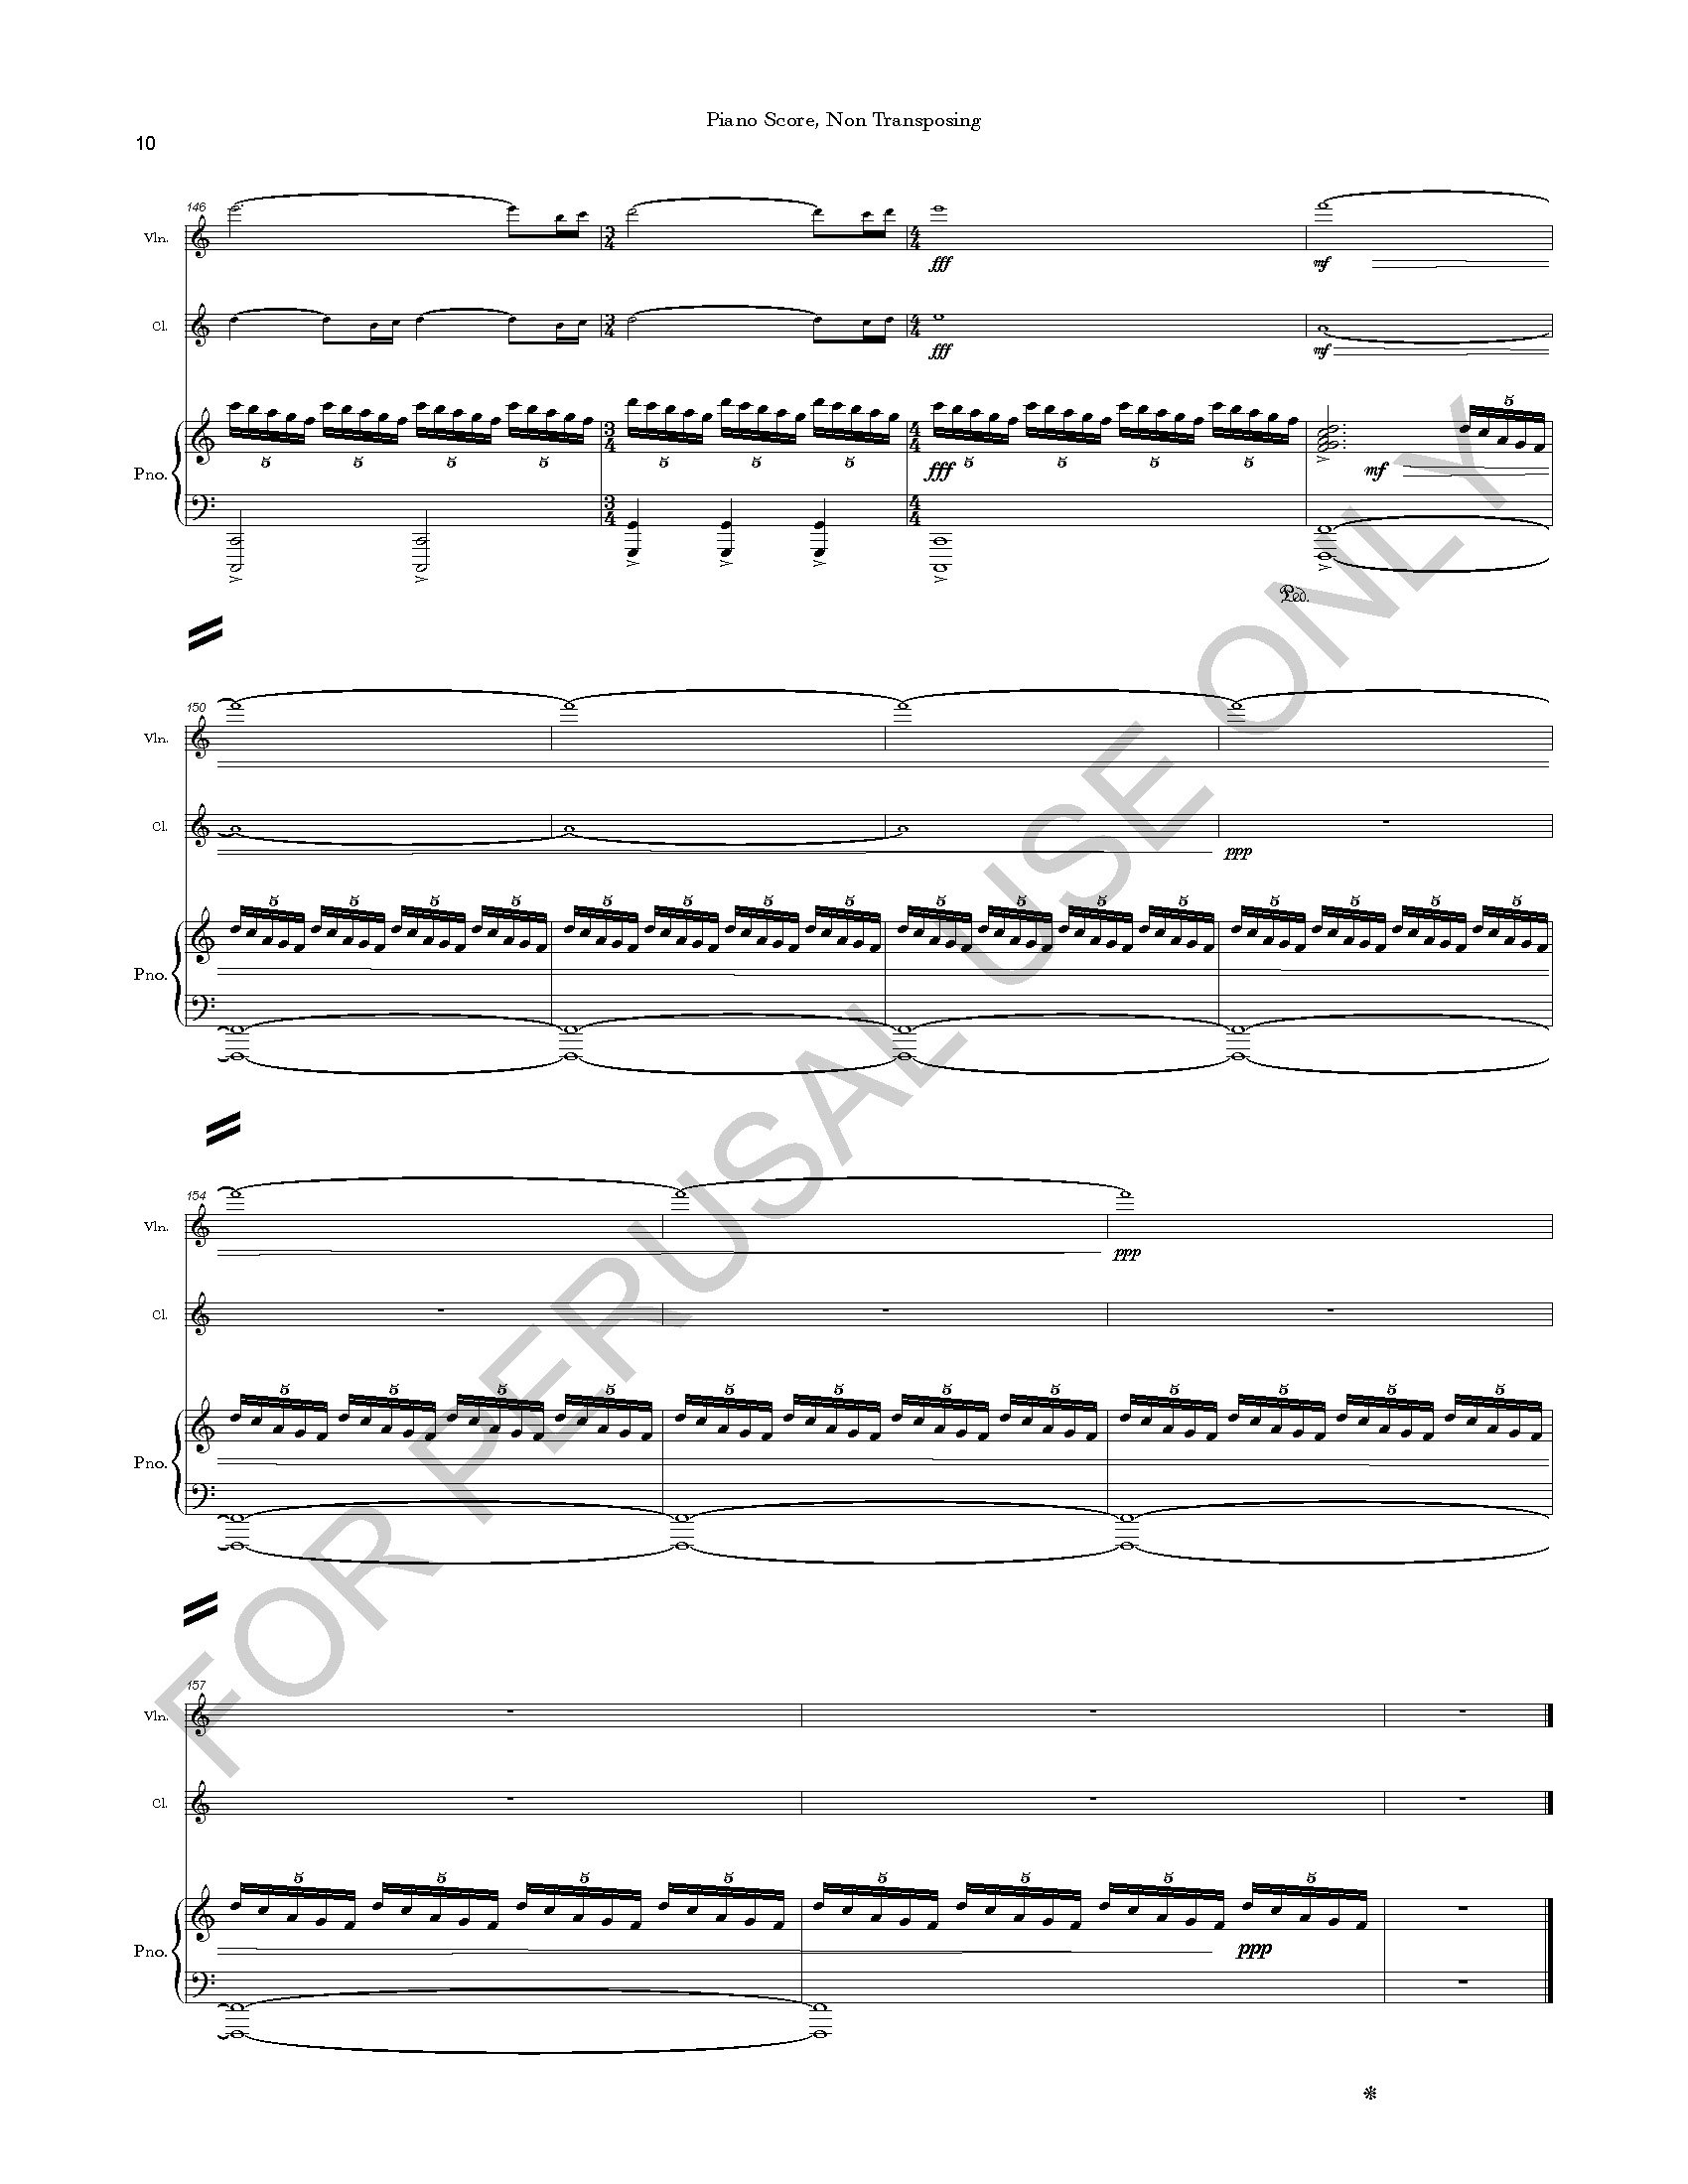 RANKIN - I. ASCENT - PIANO SCORE_Page_21.jpg